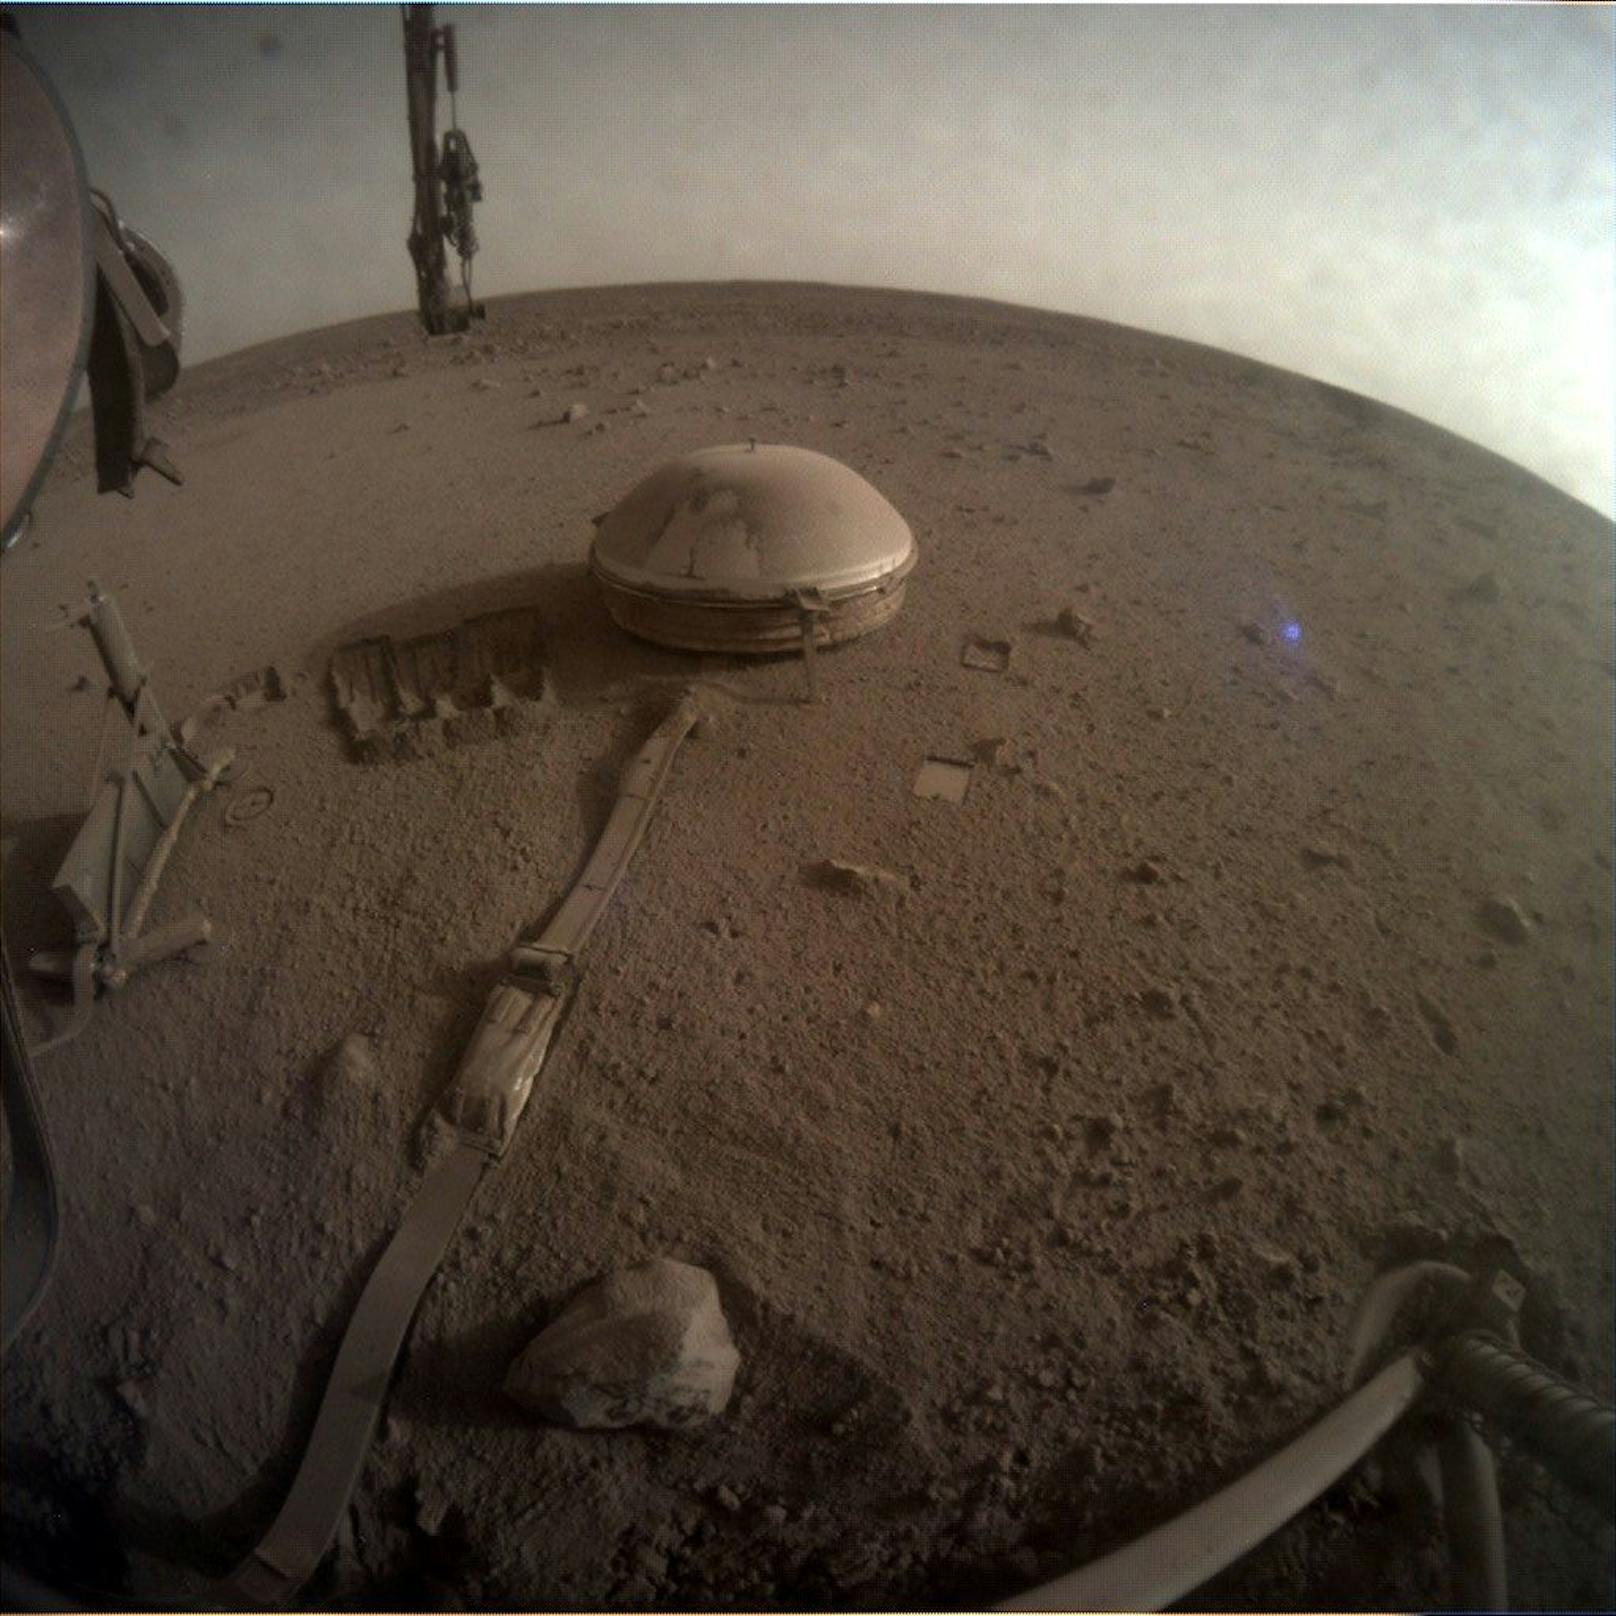 Mars-Lander "InSight" sendet letztes Bild und Botschaft